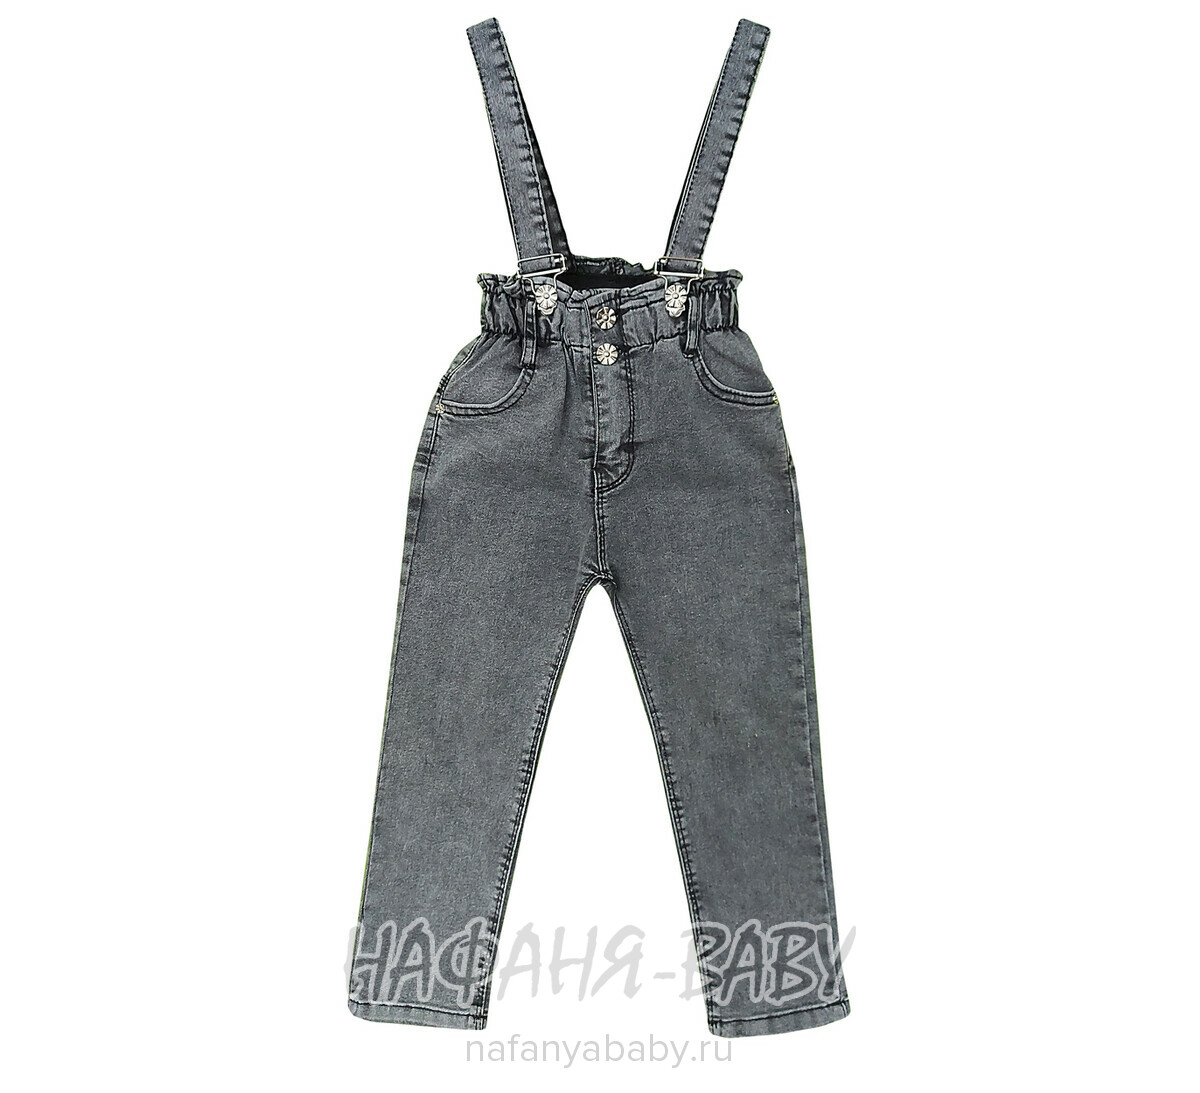 Детские джинсы TATI Jeans арт: 9601 для девочки от 3 до 7 лет, цвет черный, оптом Турция